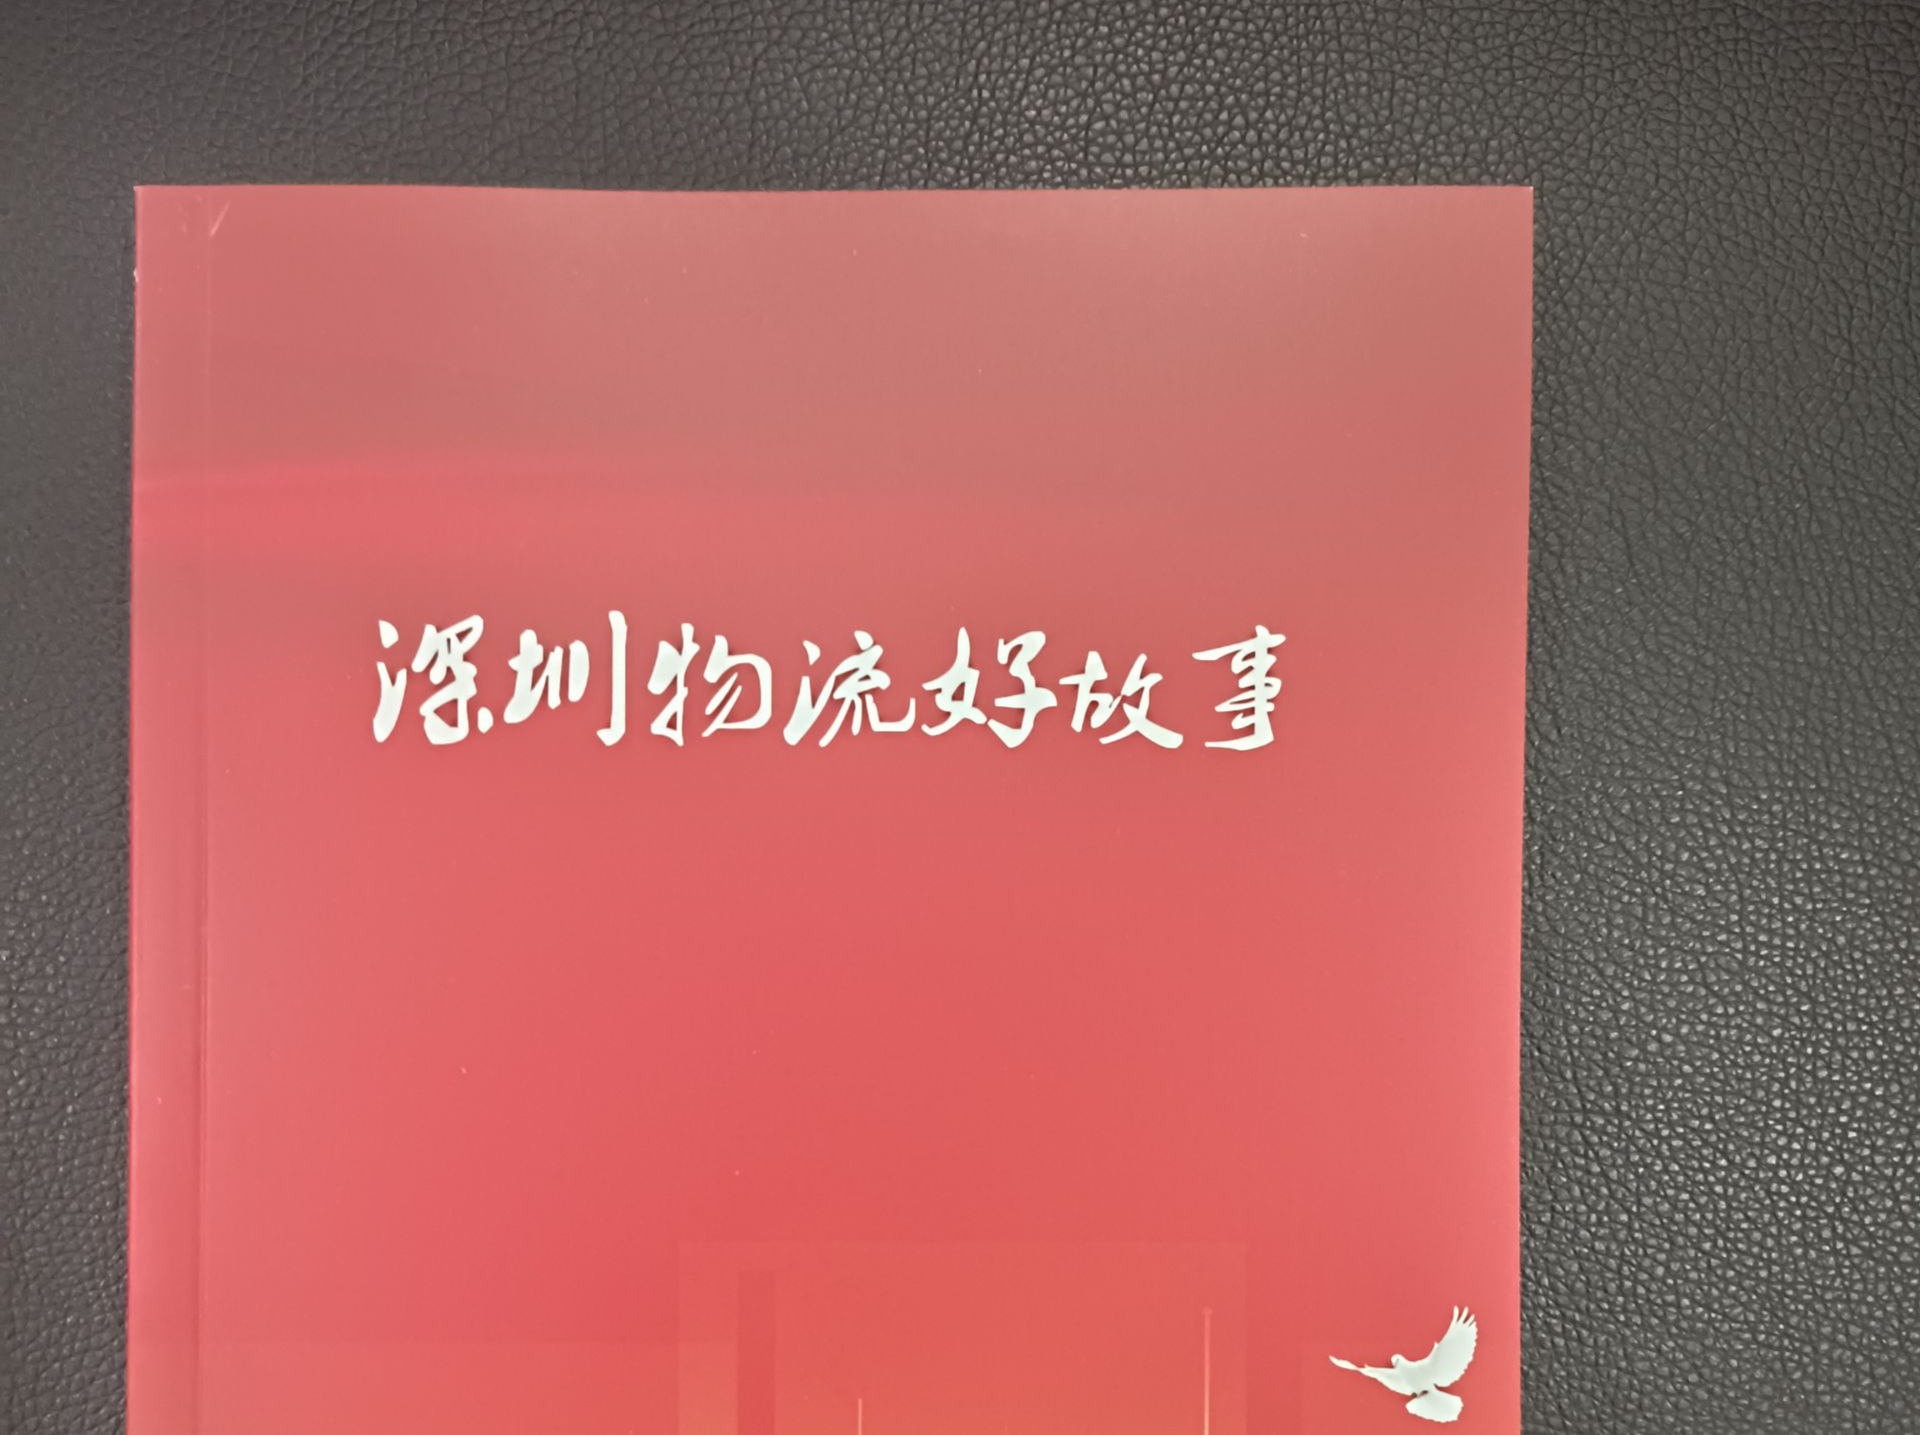 《深圳物流好故事》正式出版发行